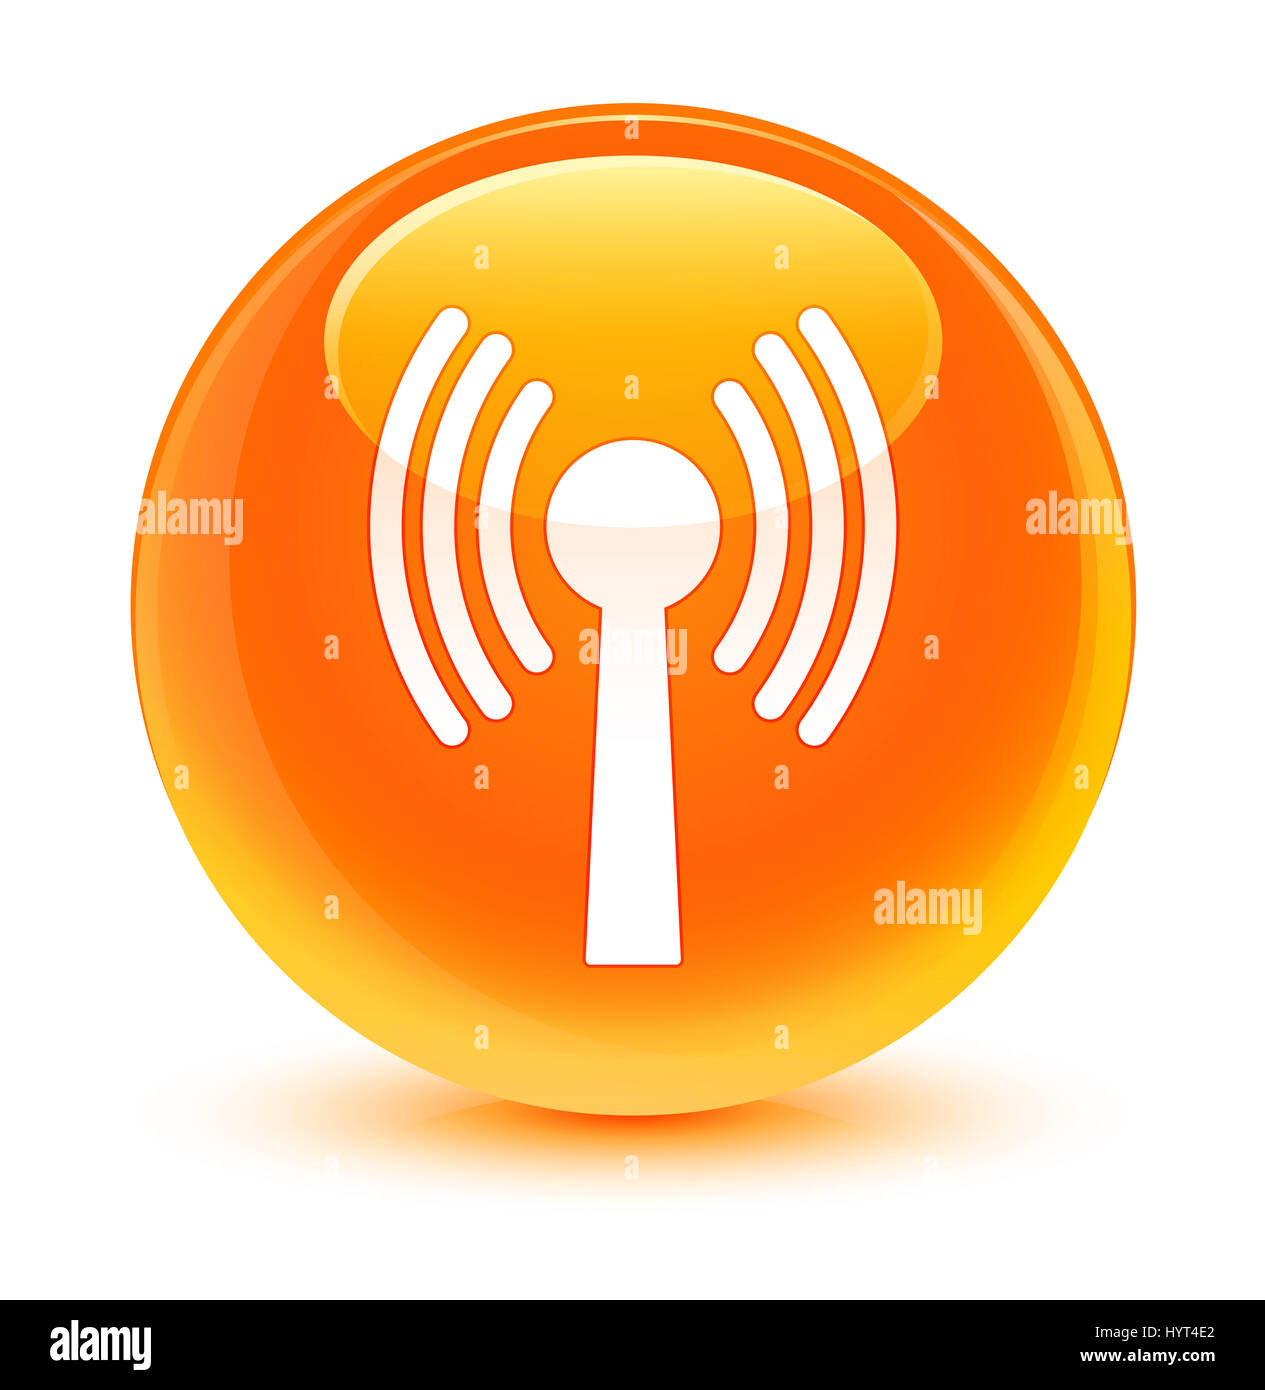 L'icône de réseau local sans fil isolé sur bouton rond orange vitreux abstract illustration Banque D'Images